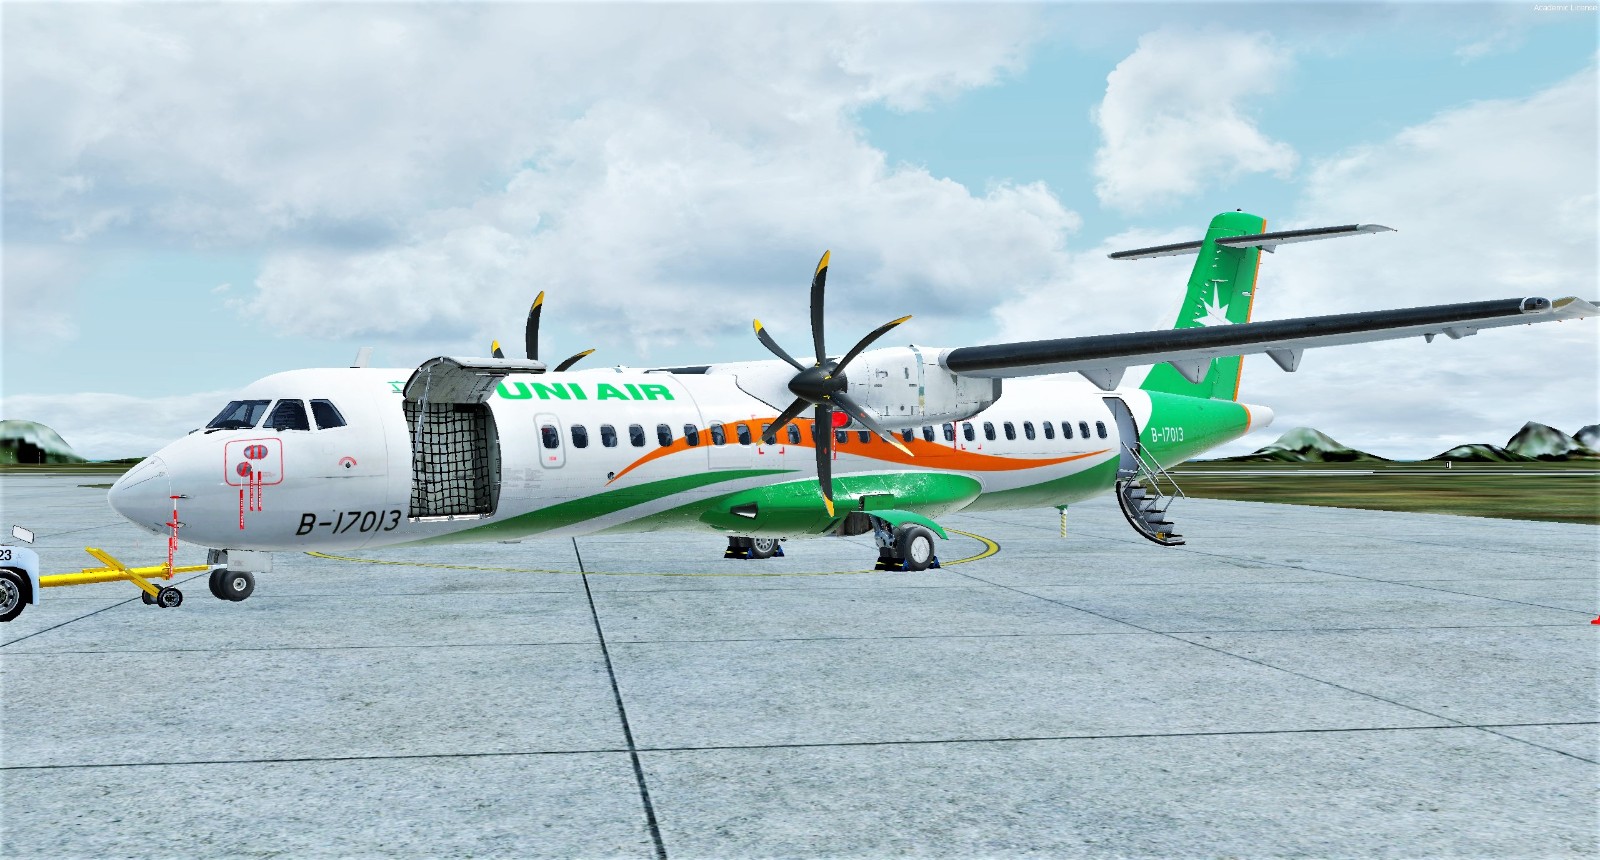 Carenado ATR 72-1251 